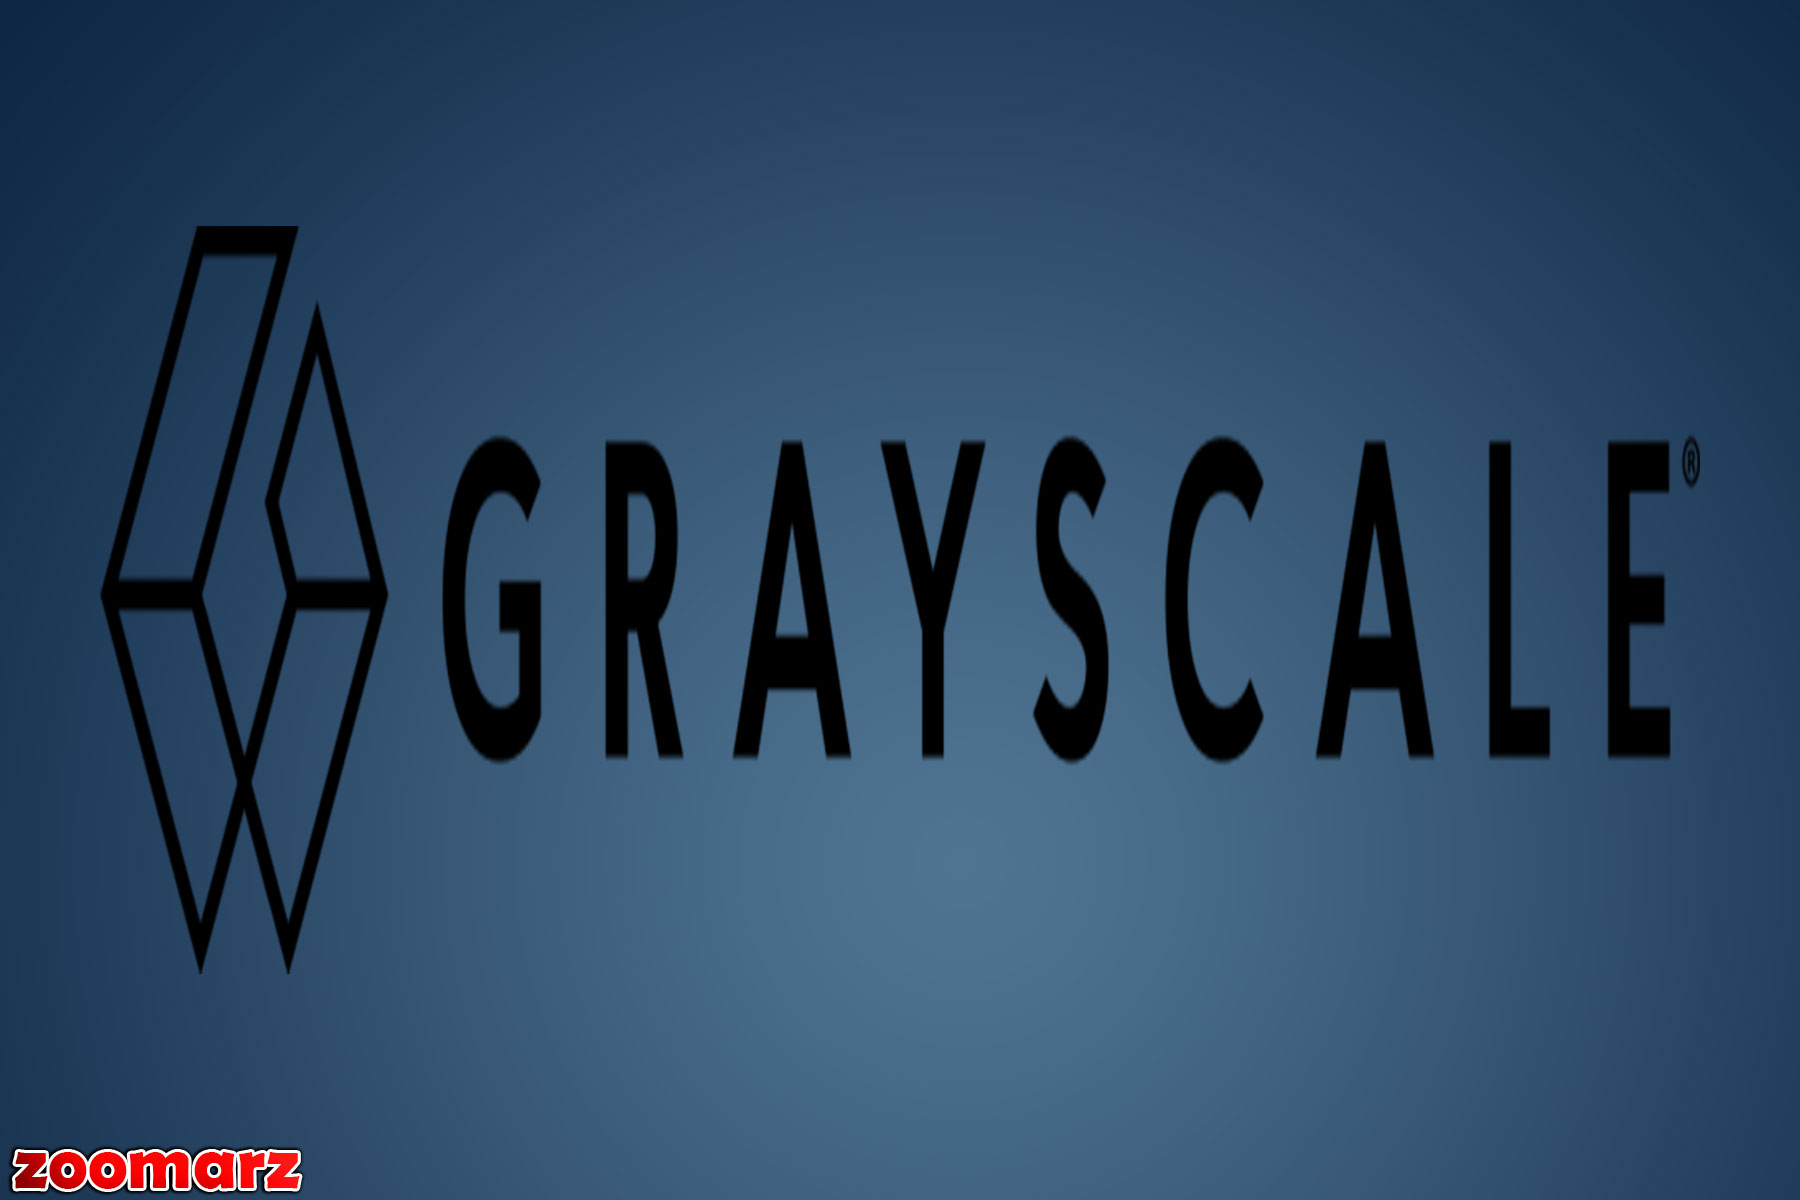 مدیر عامل شرکت می گوید که Grayscale برای فرصت های مرتبط با M&A باز است